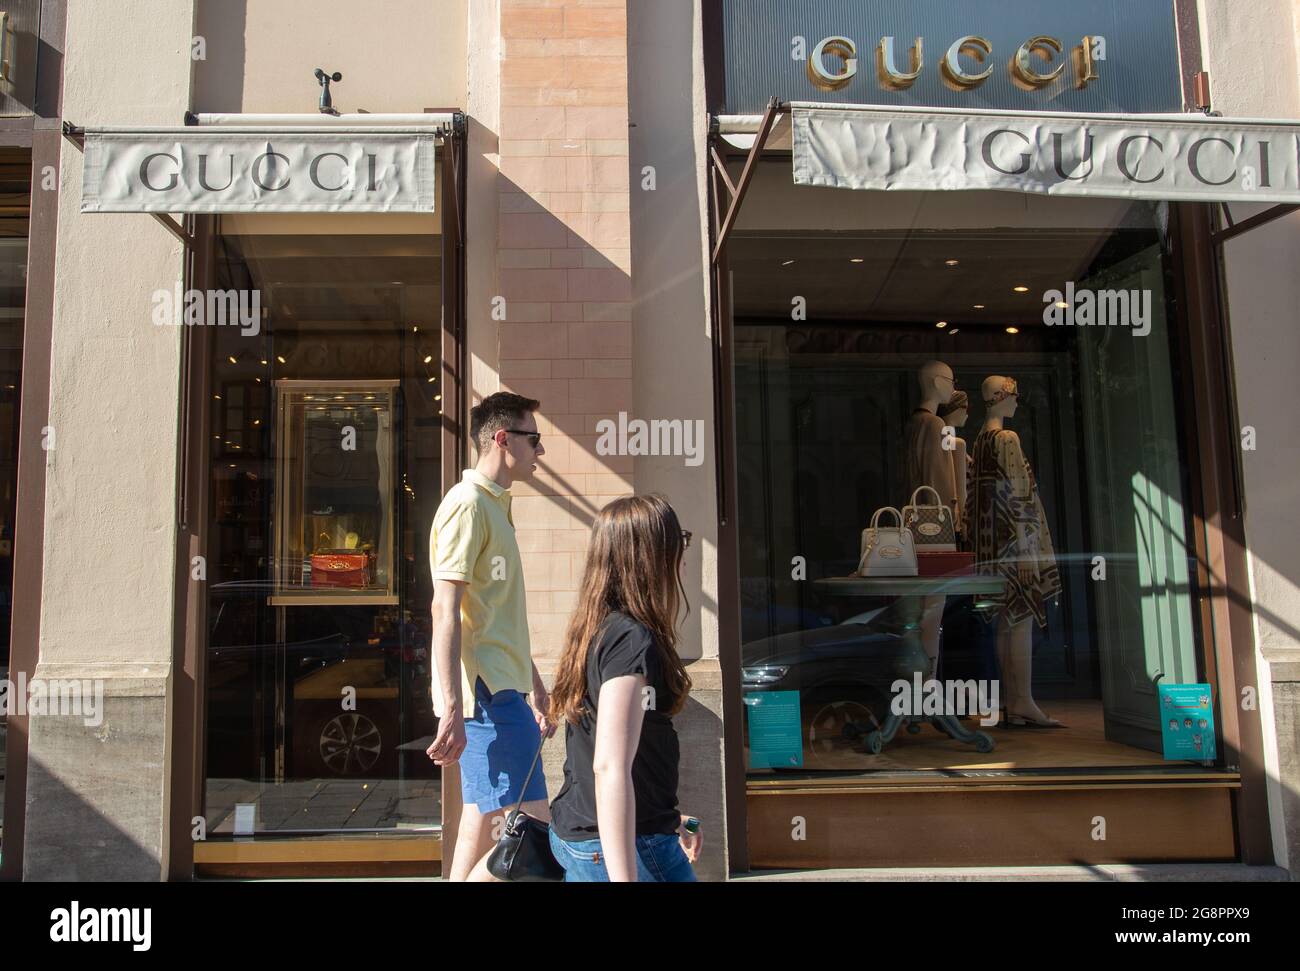 Menschen gehen am Gucci Laden in der Maximilianstraße. Viele Menschen  nutzen den Samstag um in der Innenstadt Einkäufe zu tätigen und durch die  Geschäfte zu stöbern. Vor einigen Läden gab es auch